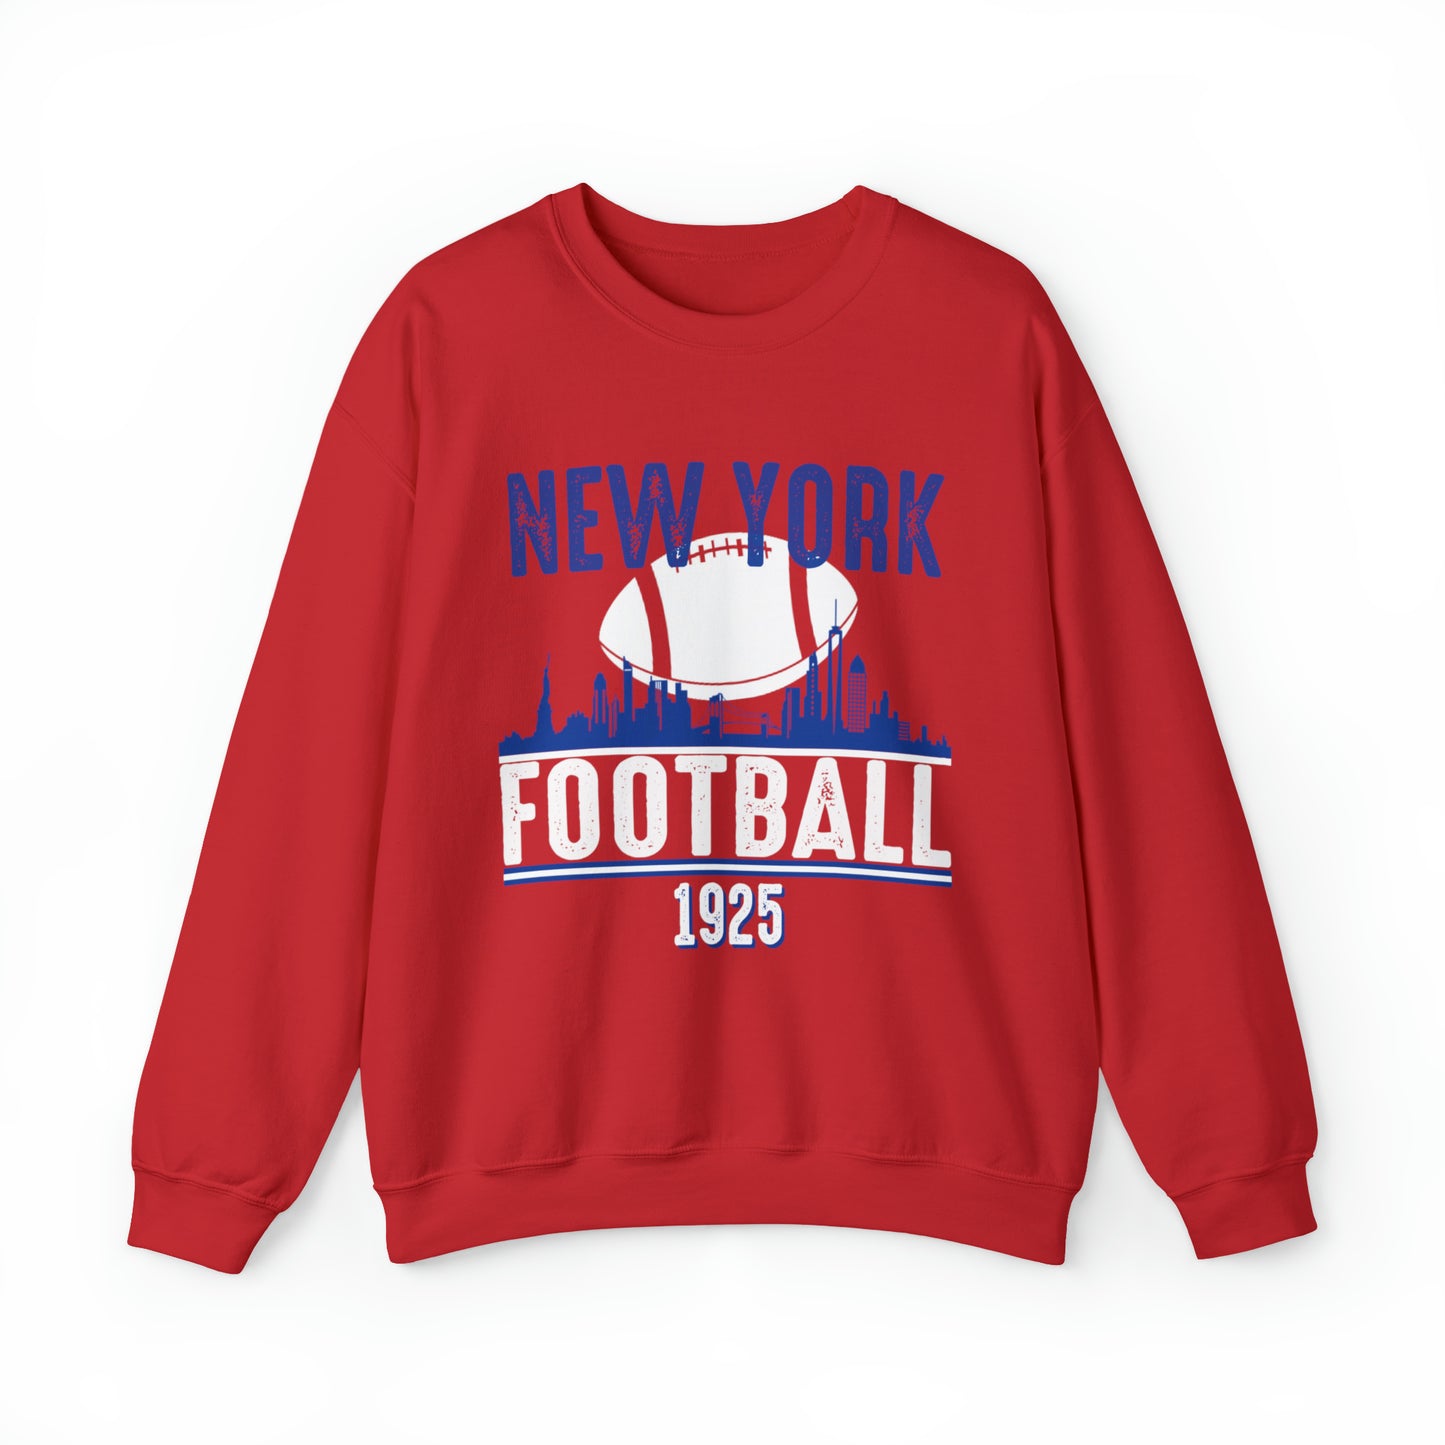 New York Giants Football Sweatshirt